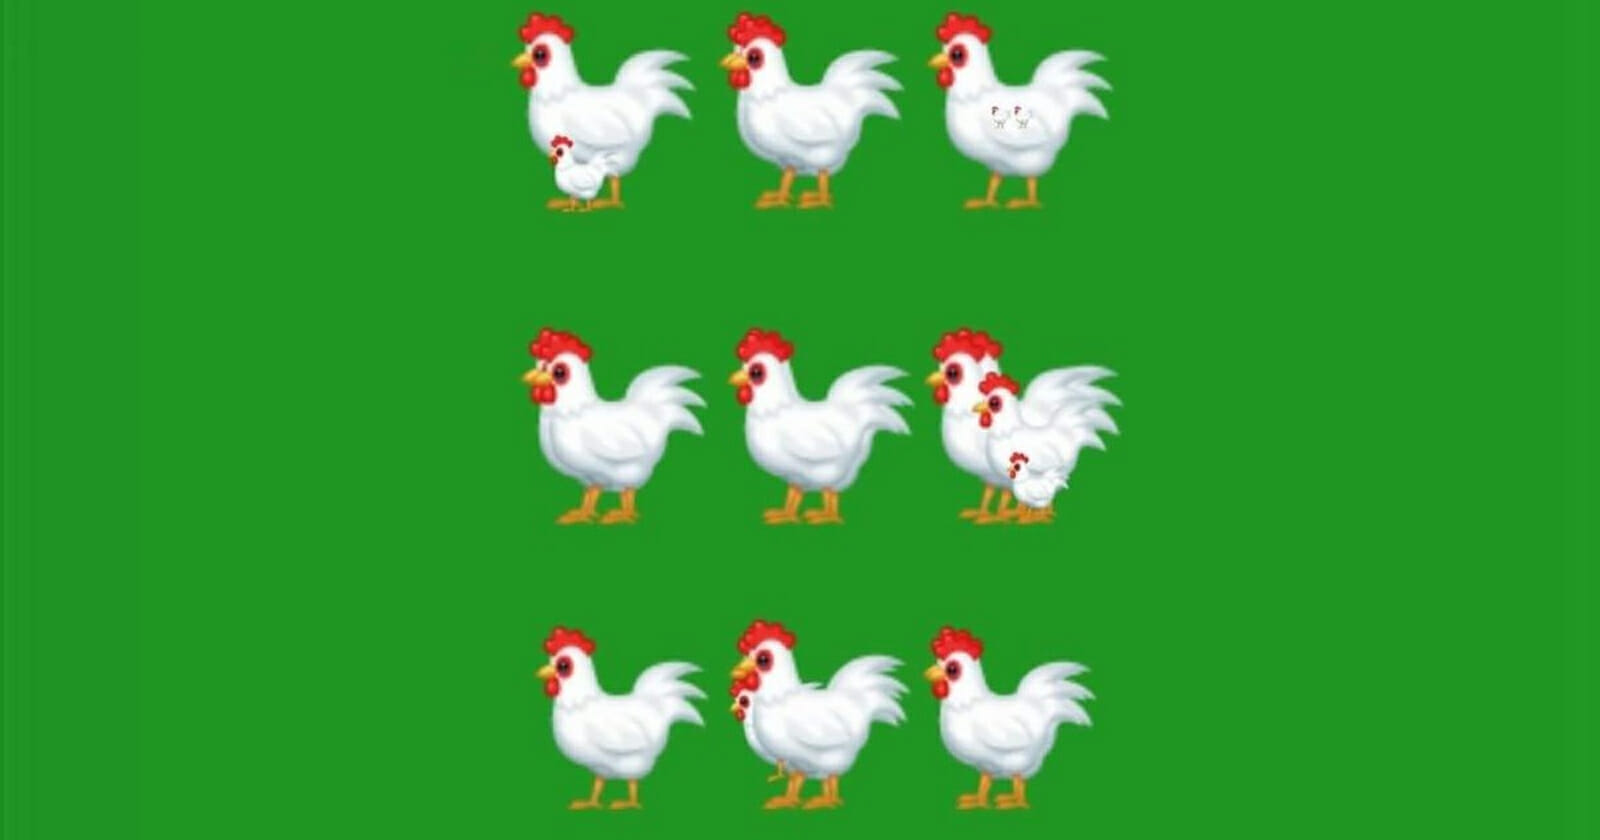 اكتشف عدد الدجاجات watanserb.com